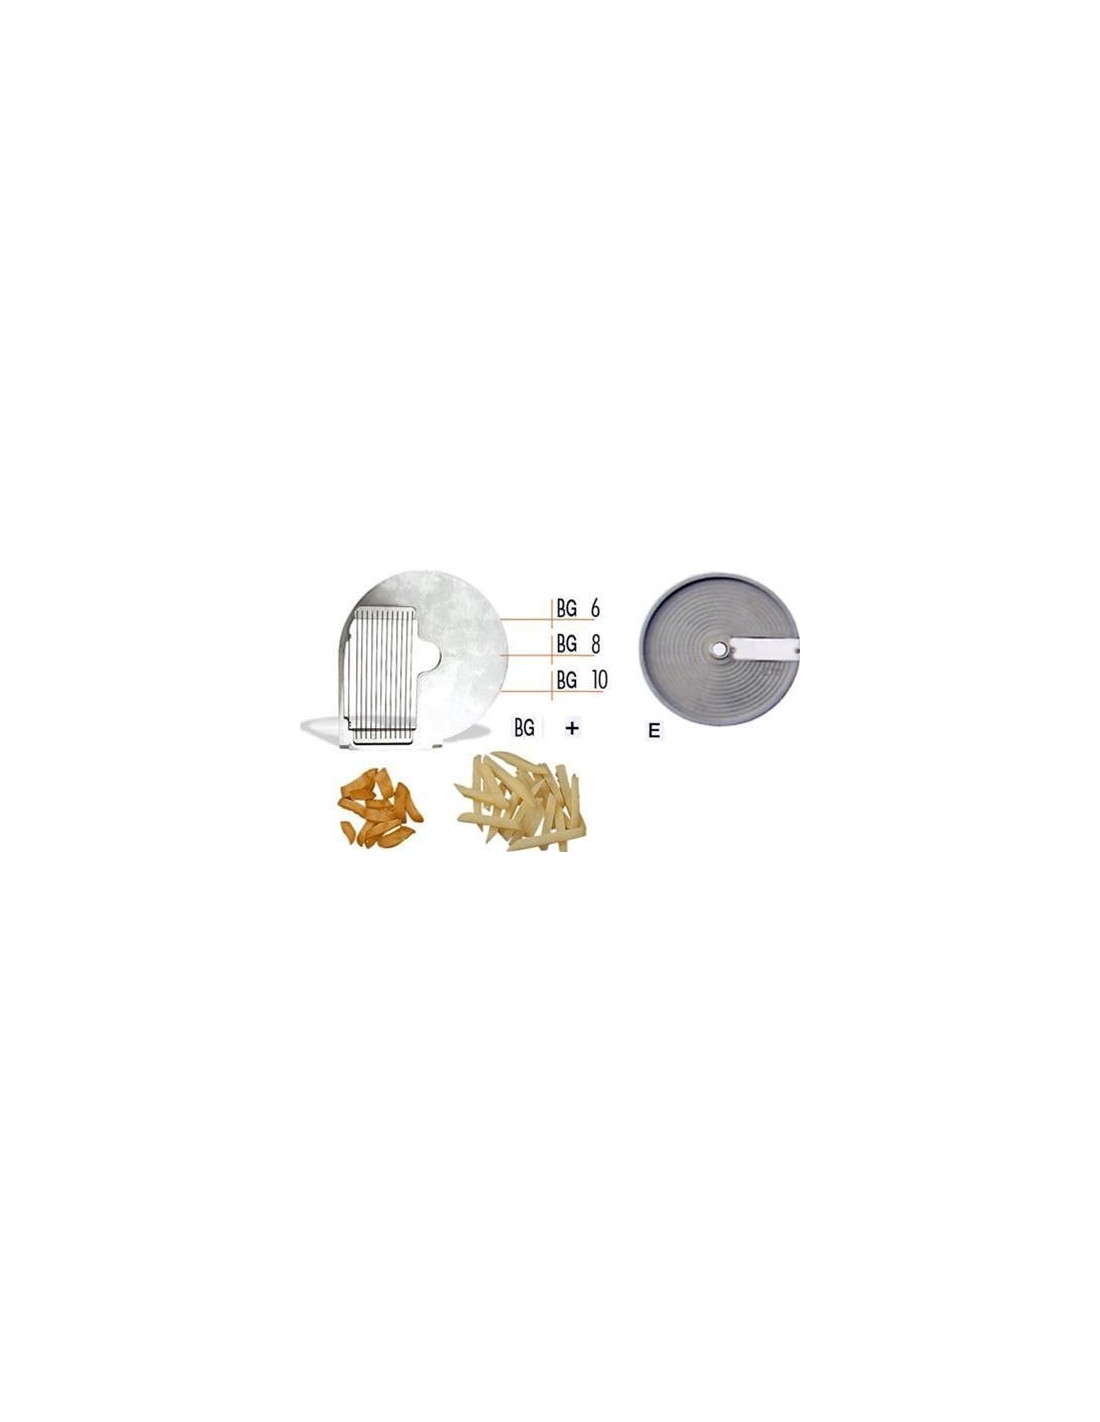 Disco tagliaverdura - per modello chef 600 - 800 - per BASTONCINI - da usare con disco mod. E - Taglio spessore mm 6